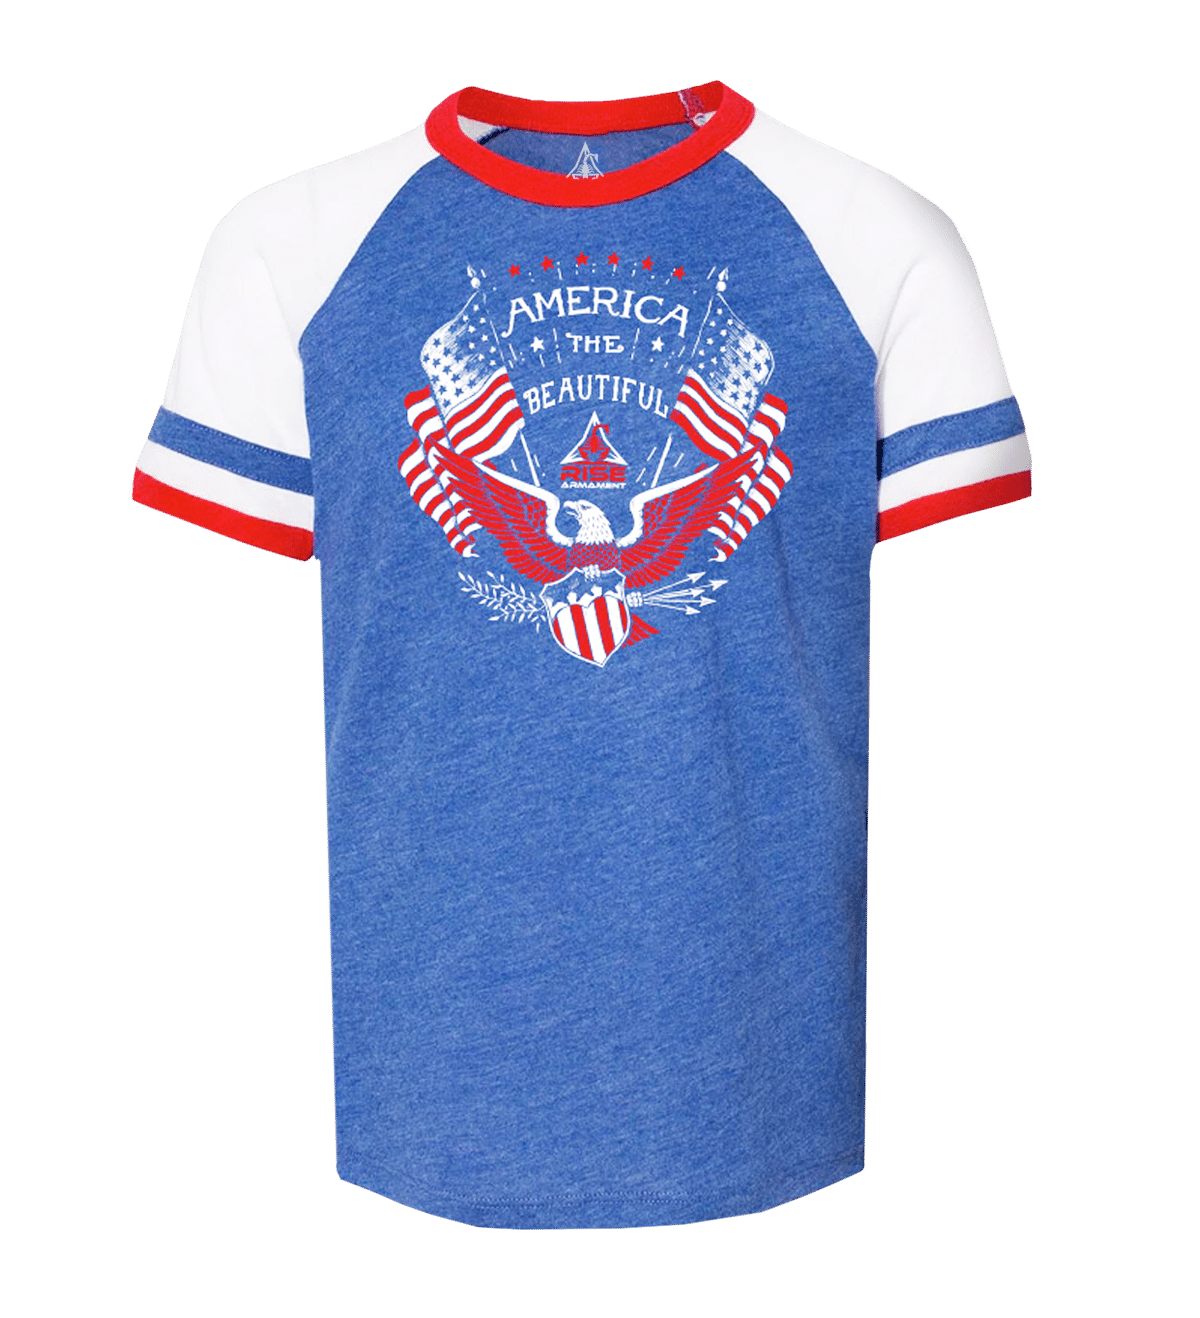 America the Beautiful shirt, t shirt